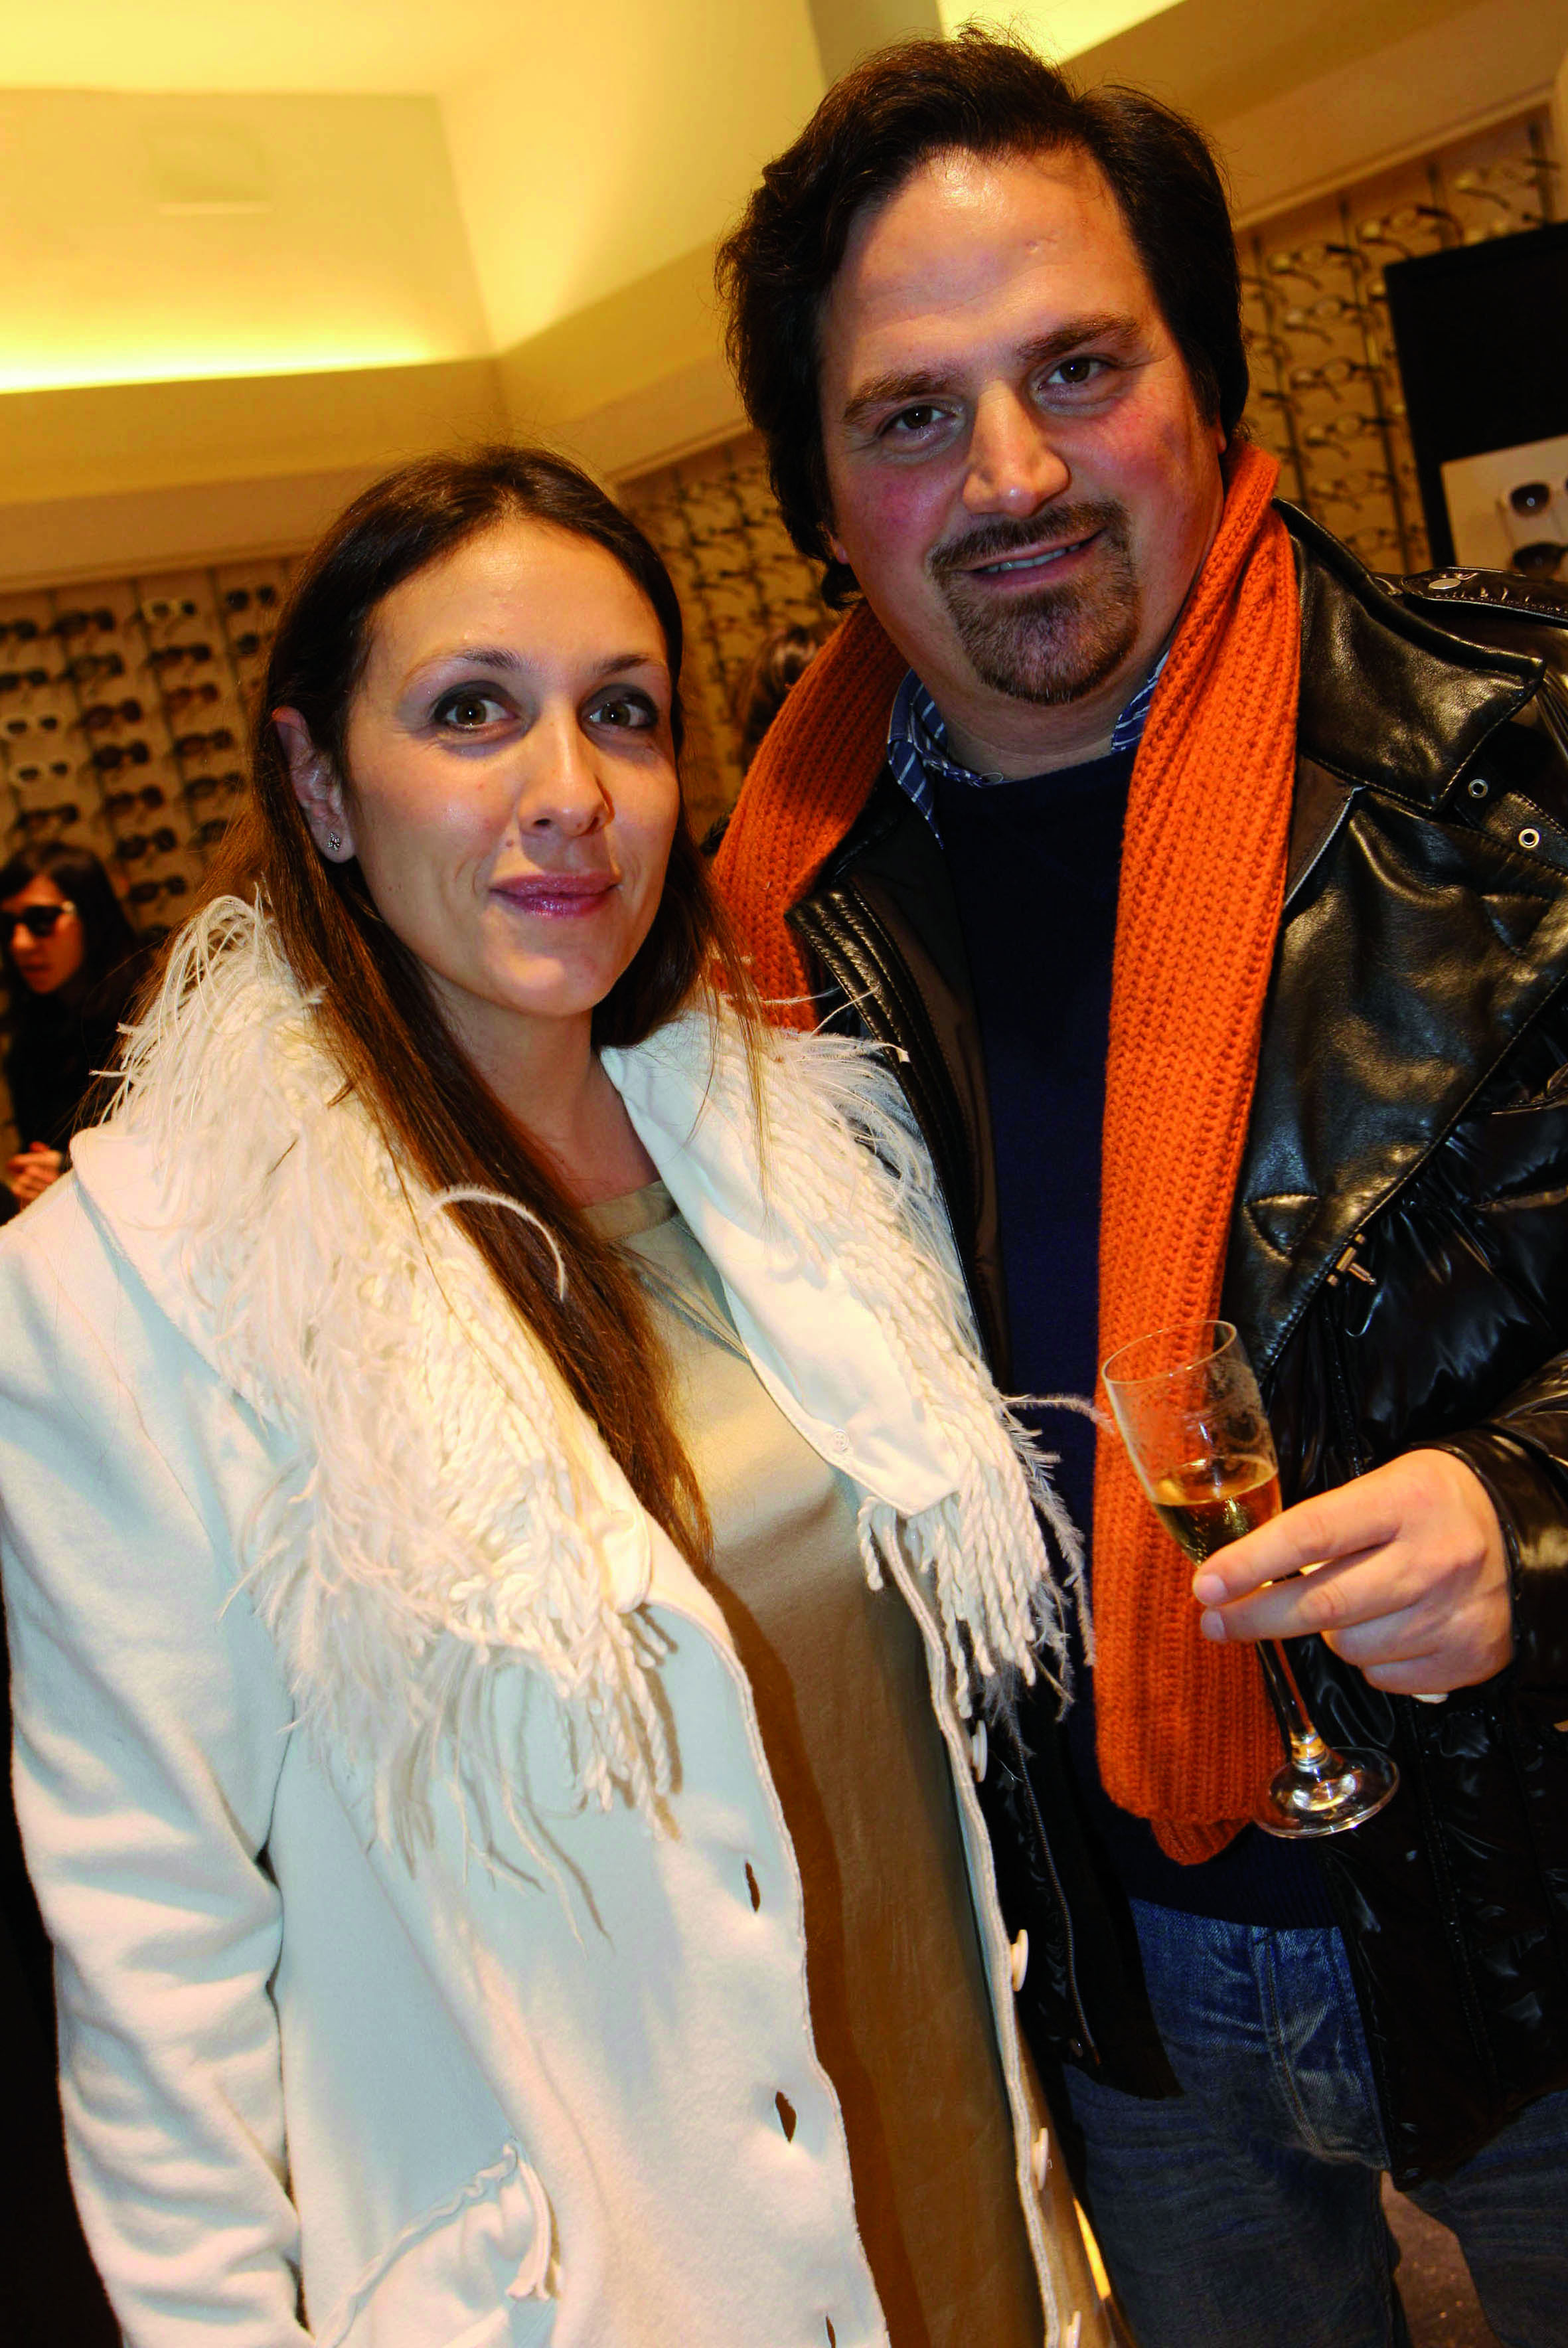 Paolo e benedetta Luccioli
pressphoto-Firenze Magazine  presentazione collezzione occhiali Chanel all'ottica Fontani